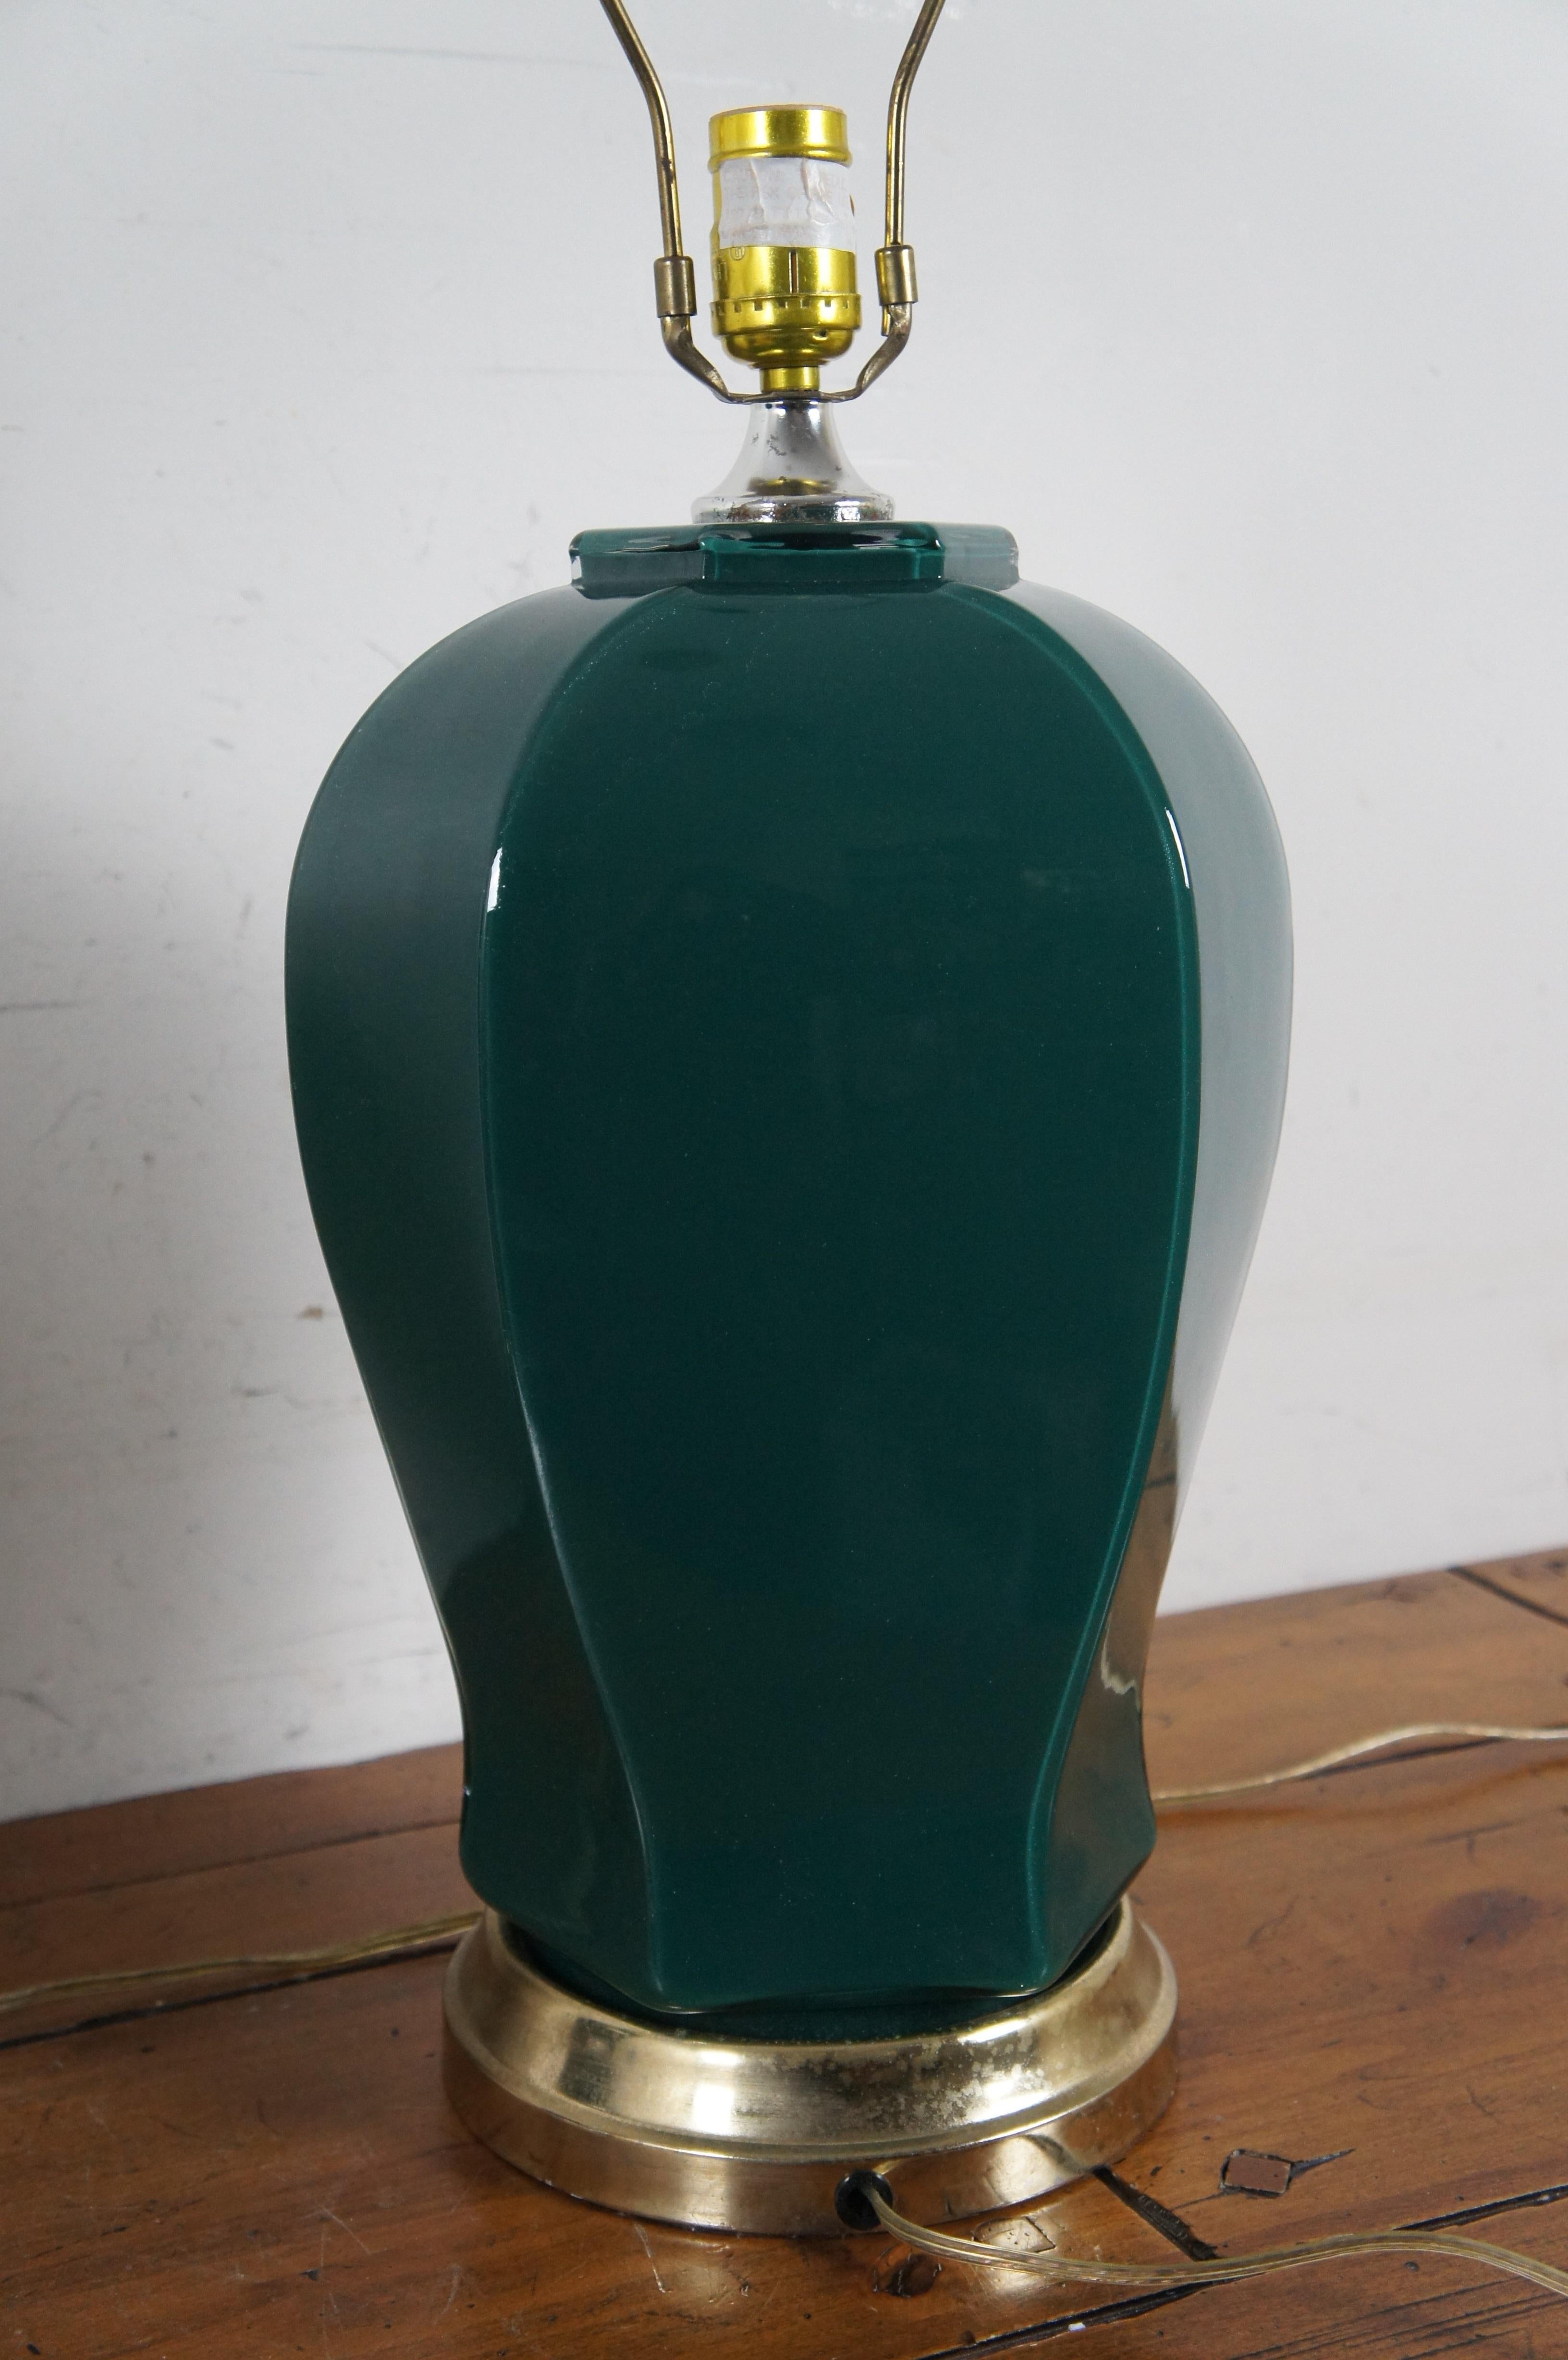 2 lampes de table en verre Ginger Jar Urn, vert forêt, Mid Century Modern, 28